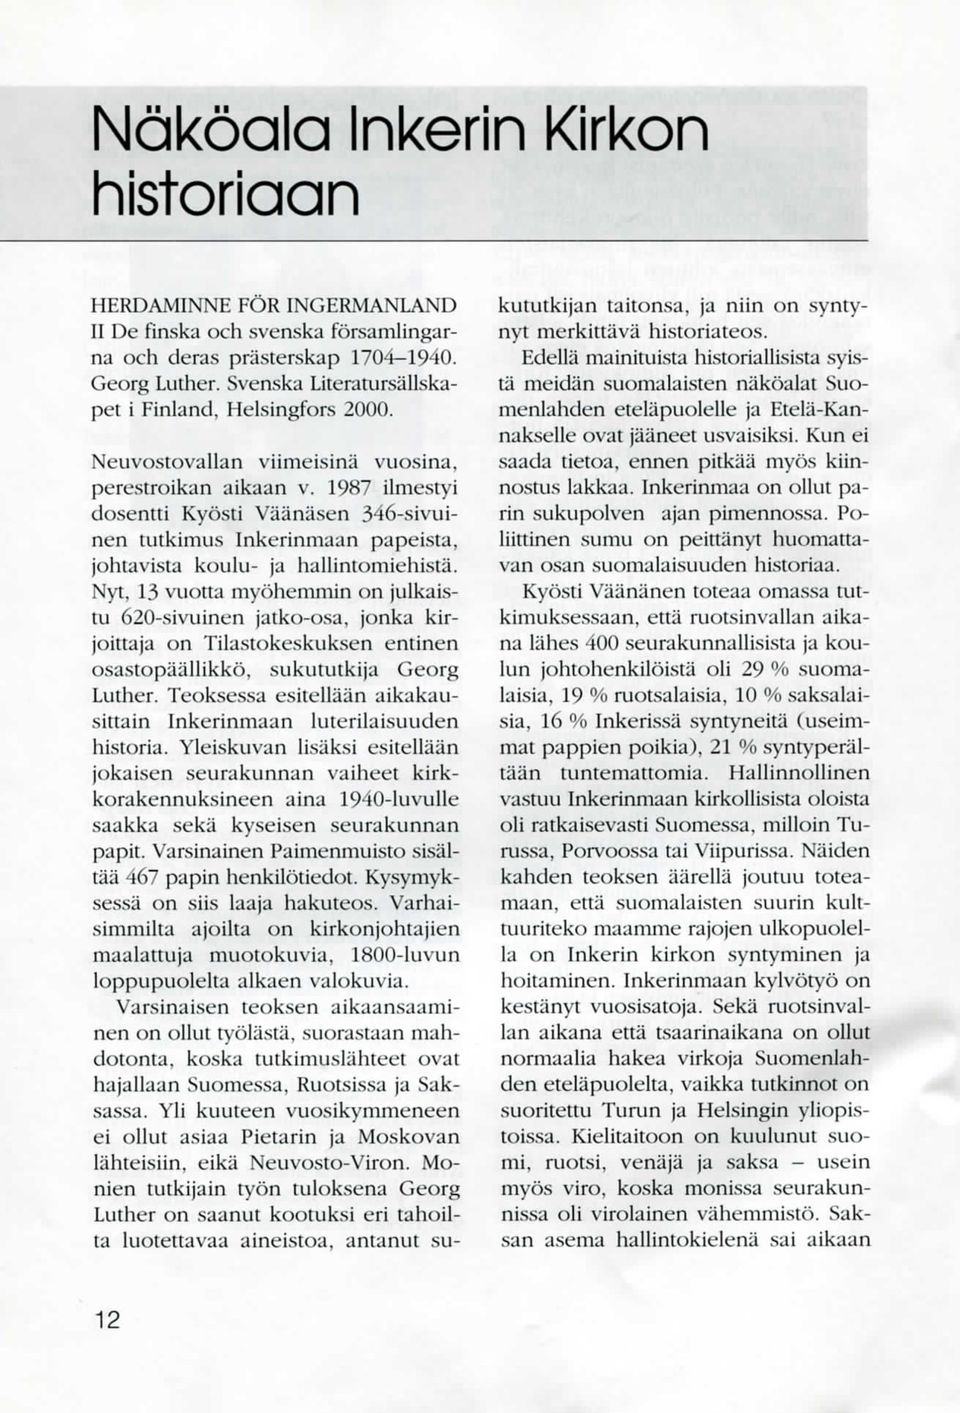 1987 ilmestyi dosentti Kyosti Vaa'nasen 346-sivuinen tutkimus Inkerinmaan papeista, johtavista koulu- ja hallintomiehista.